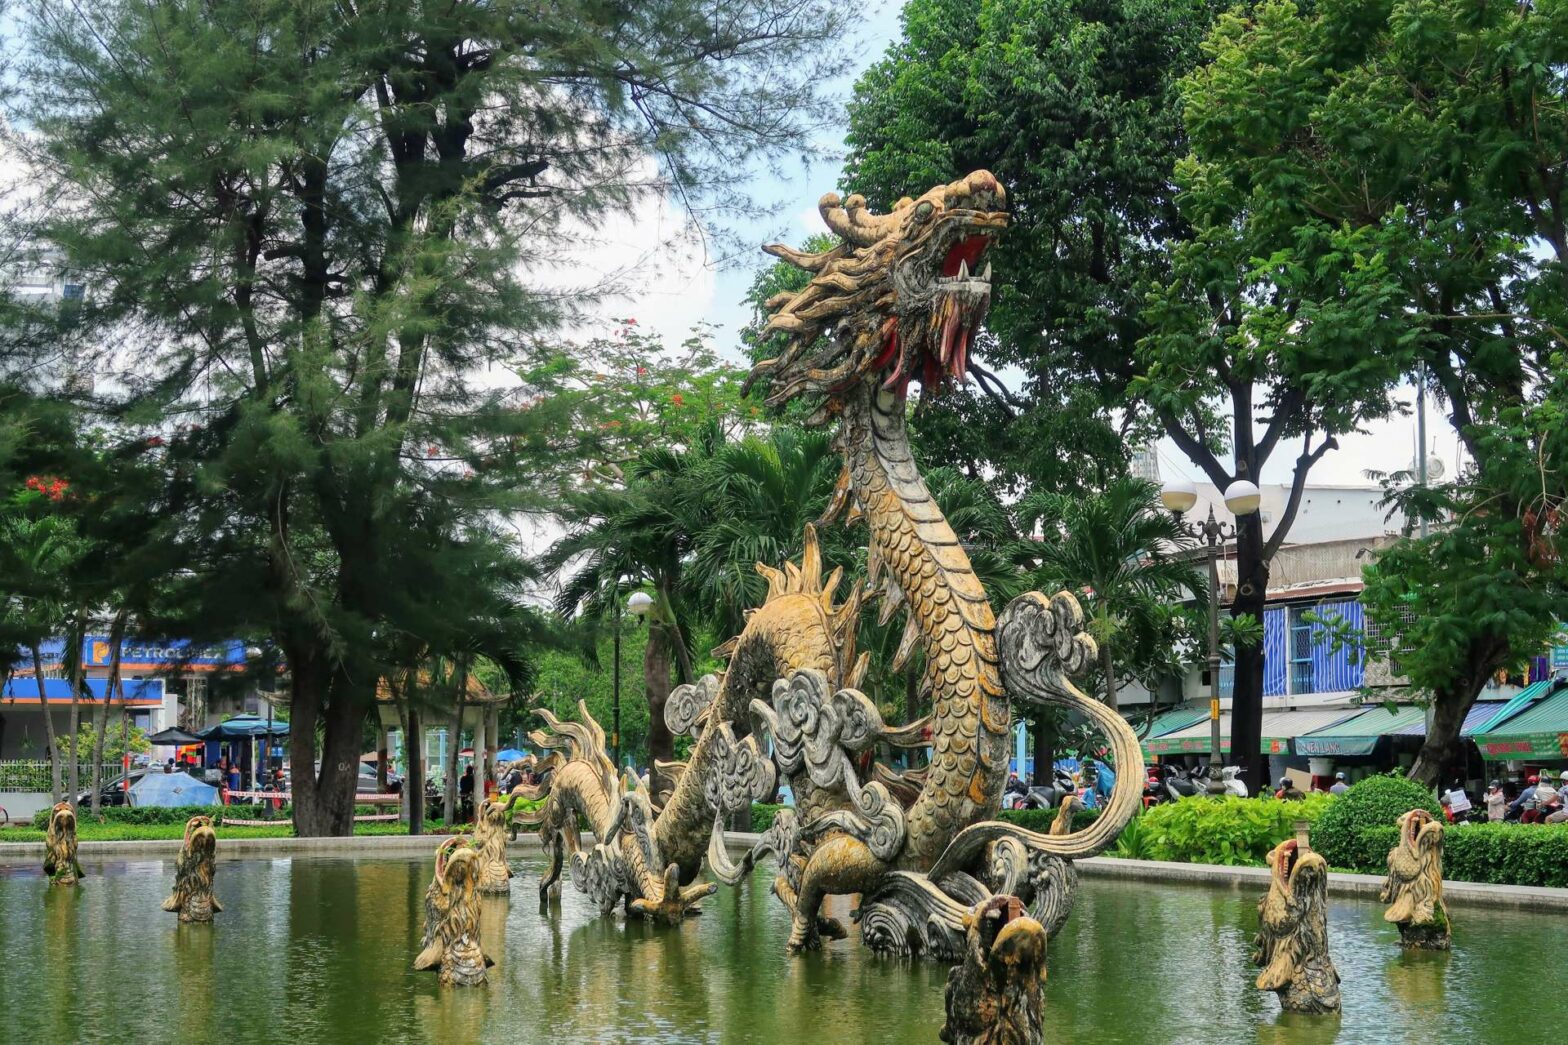 Dragon statue in Cholon, Vietnam